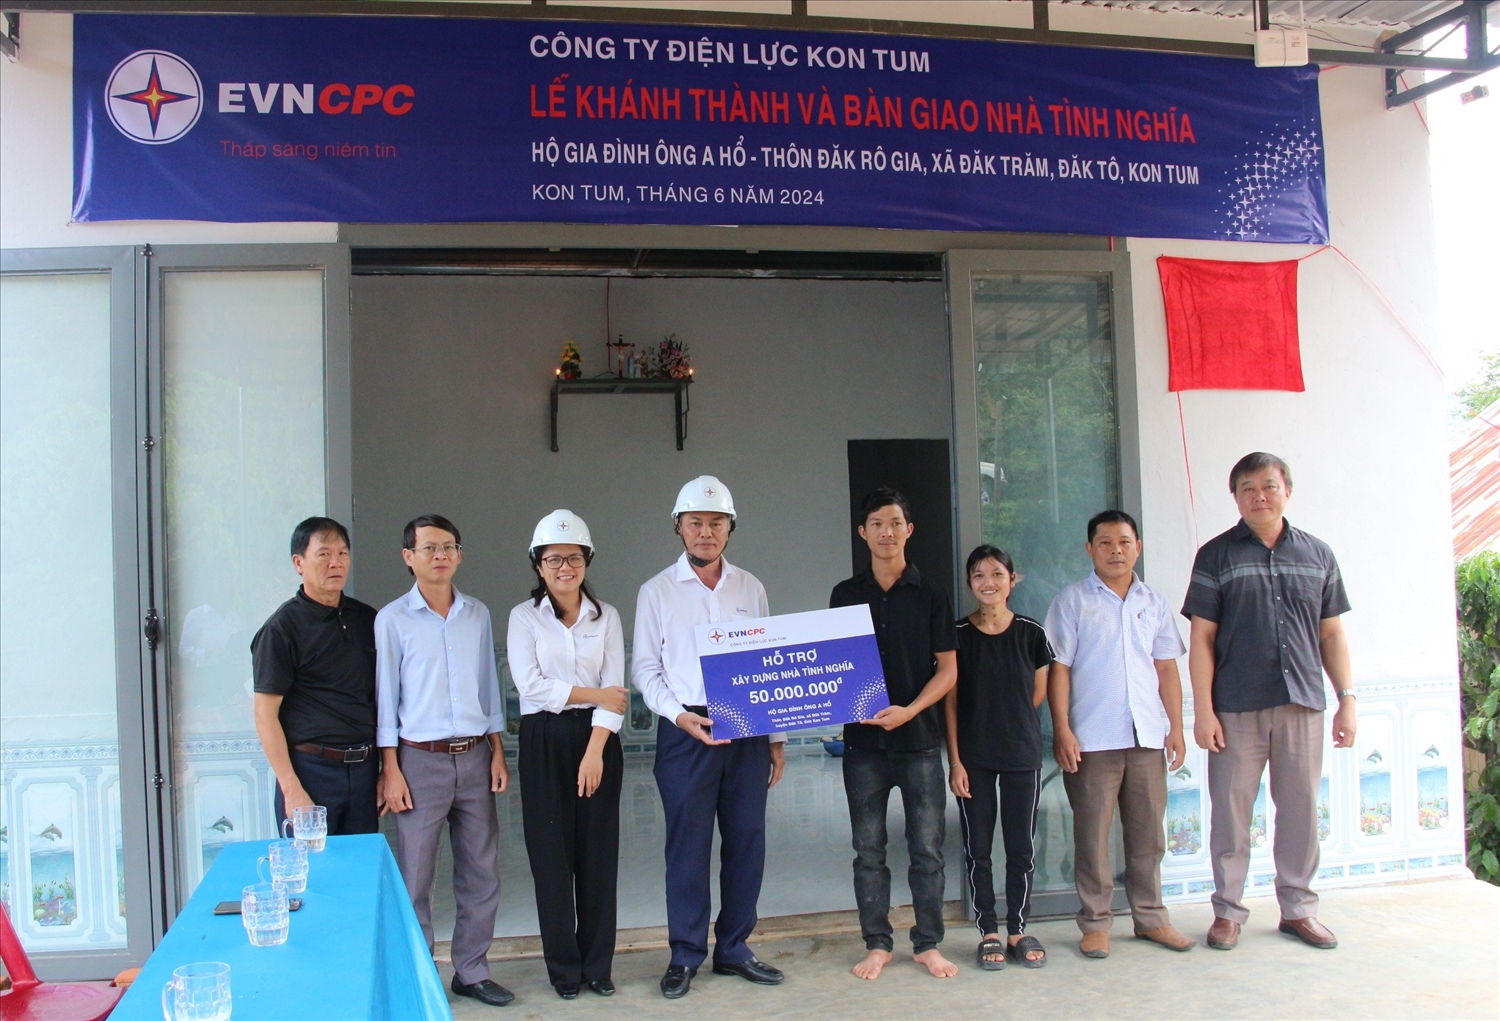 Ông Nguyễn Văn Hạnh - Giám đốc Công ty Điện lực Kon Tum trao số tiền hỗ trợ xây dựng nhà tình nghĩa cho ông A Hổ